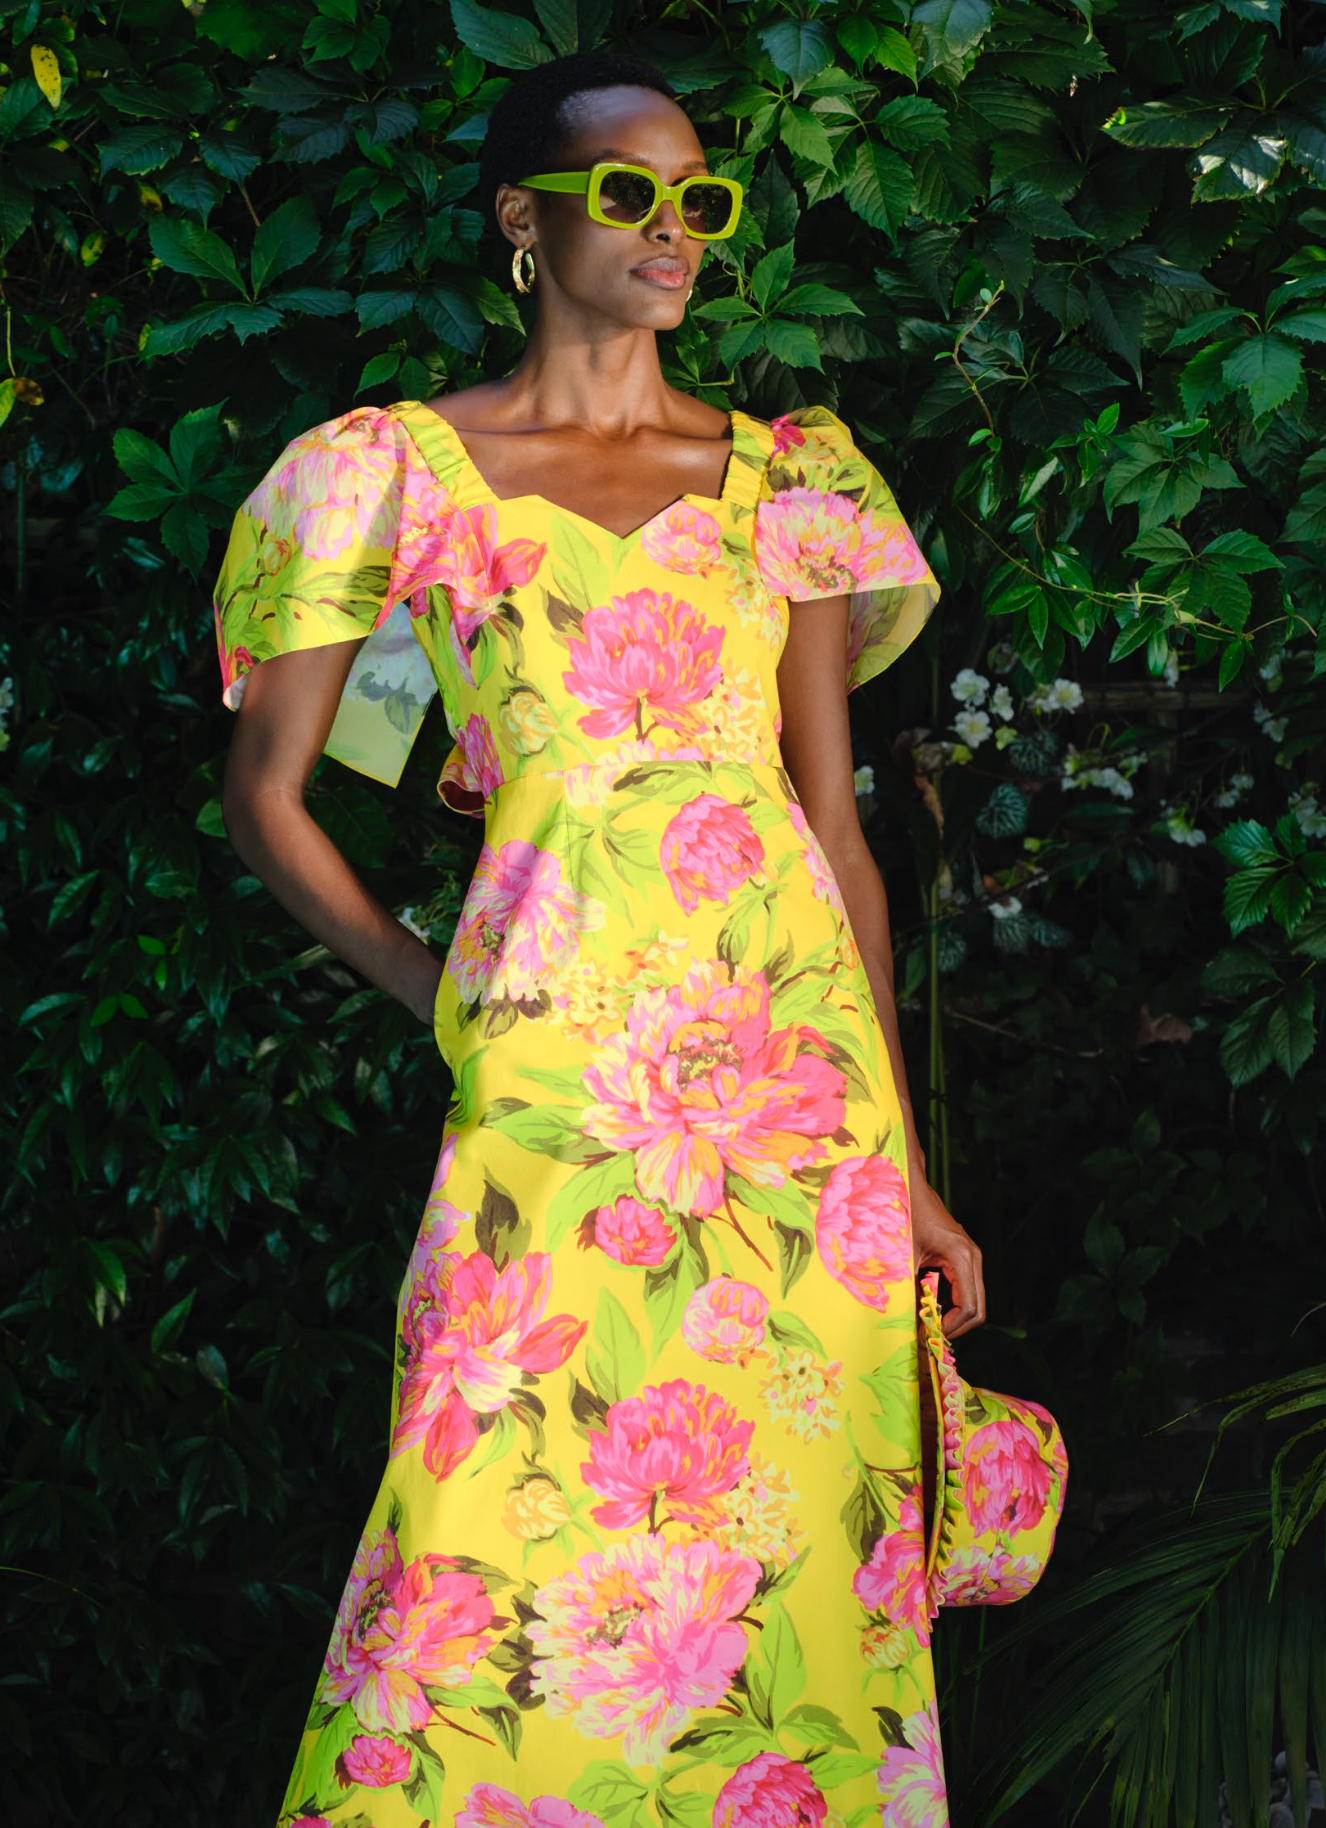 Fitzgerald Dress Mimosa Print